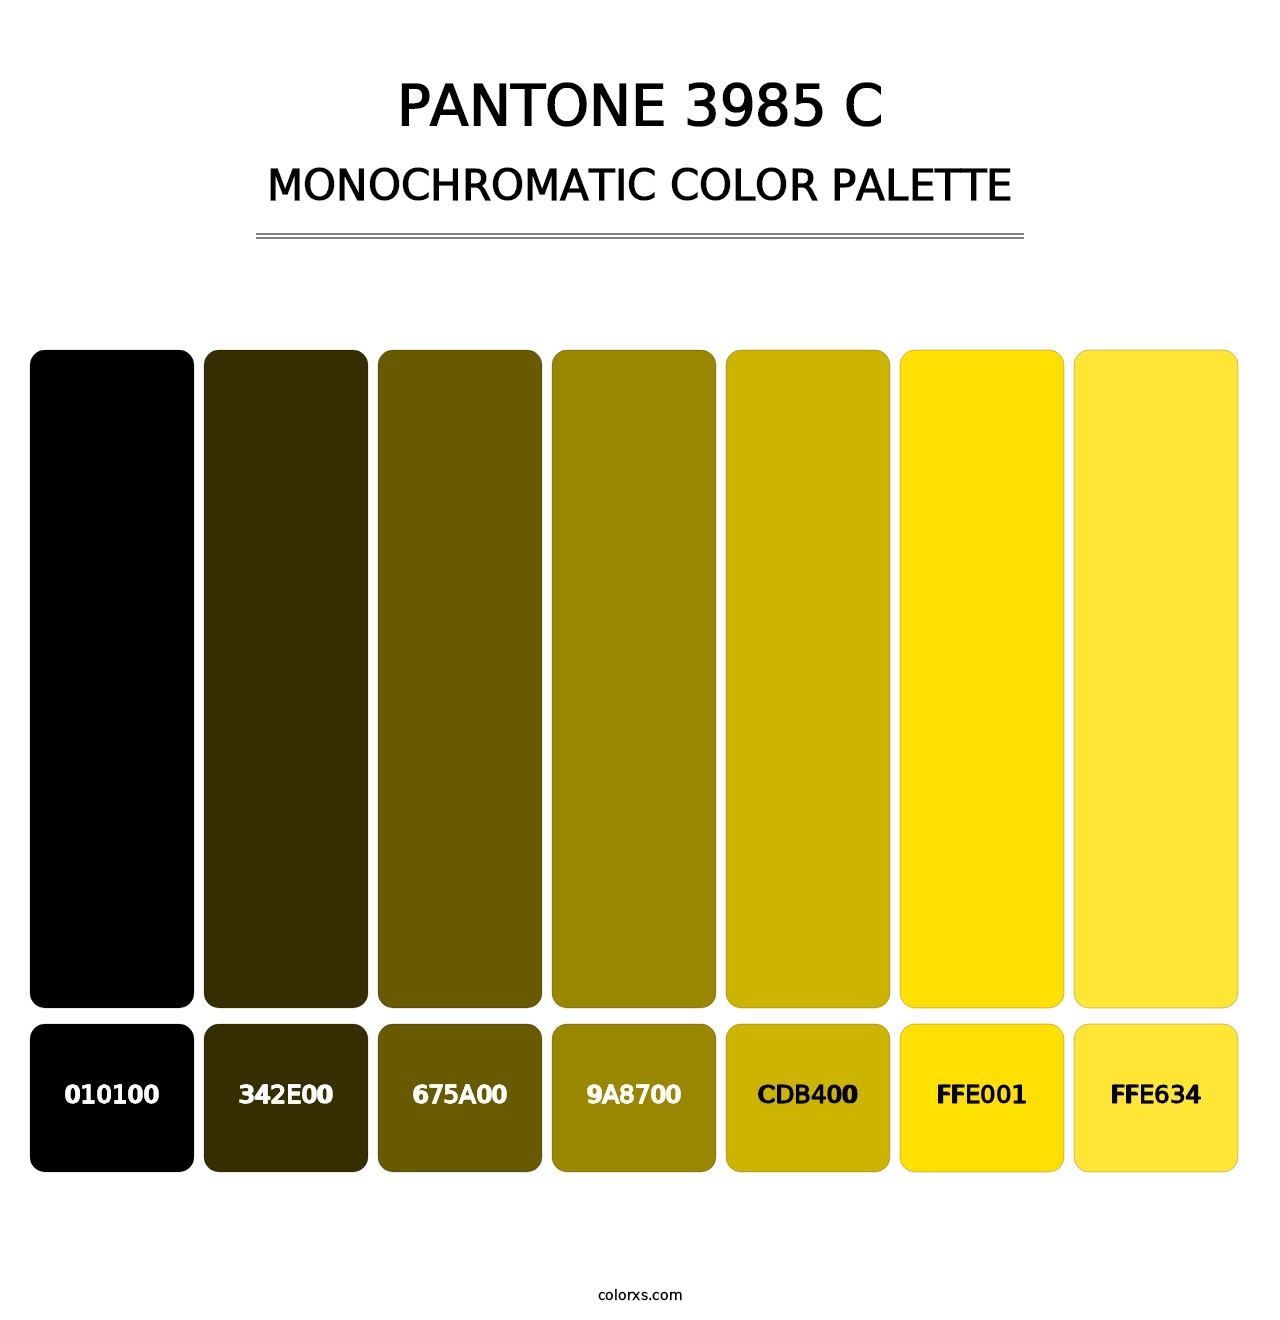 PANTONE 3985 C - Monochromatic Color Palette